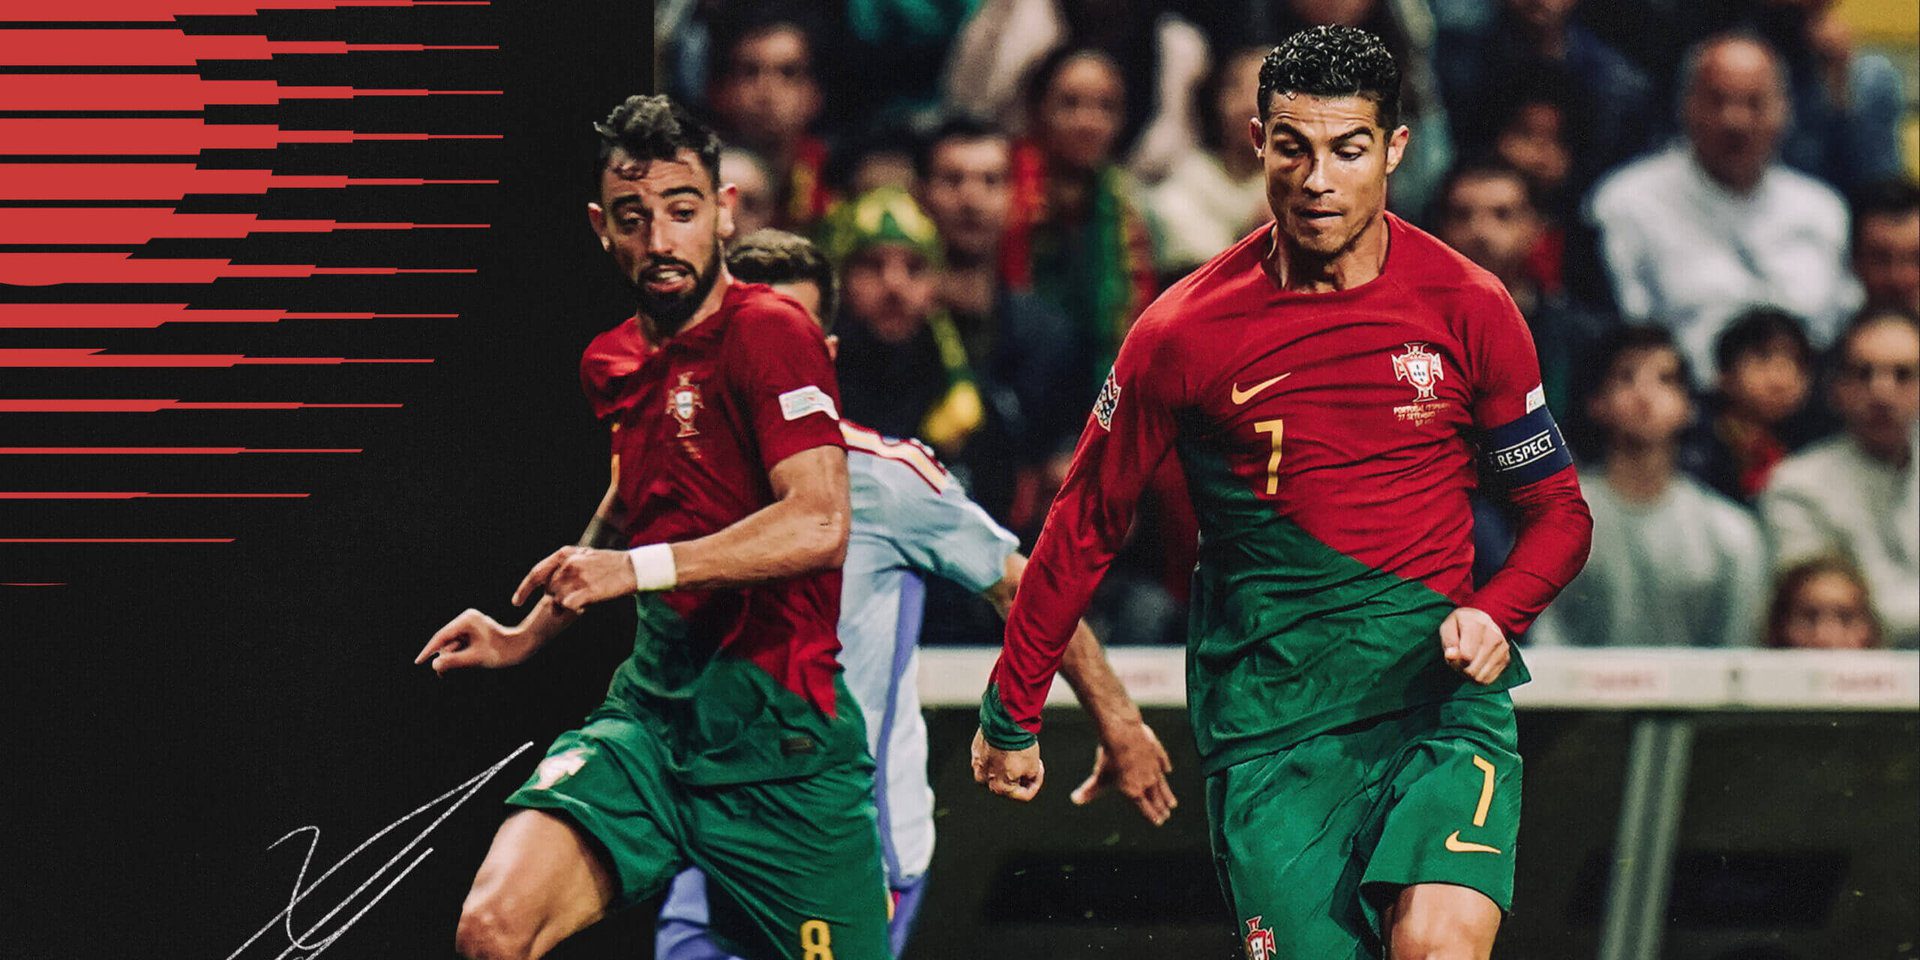 دليل منتخب البرتغال لكأس العالم 2022: النجوم الشباب والنجوم المسنون ونقاش مألوف حول رونالدو